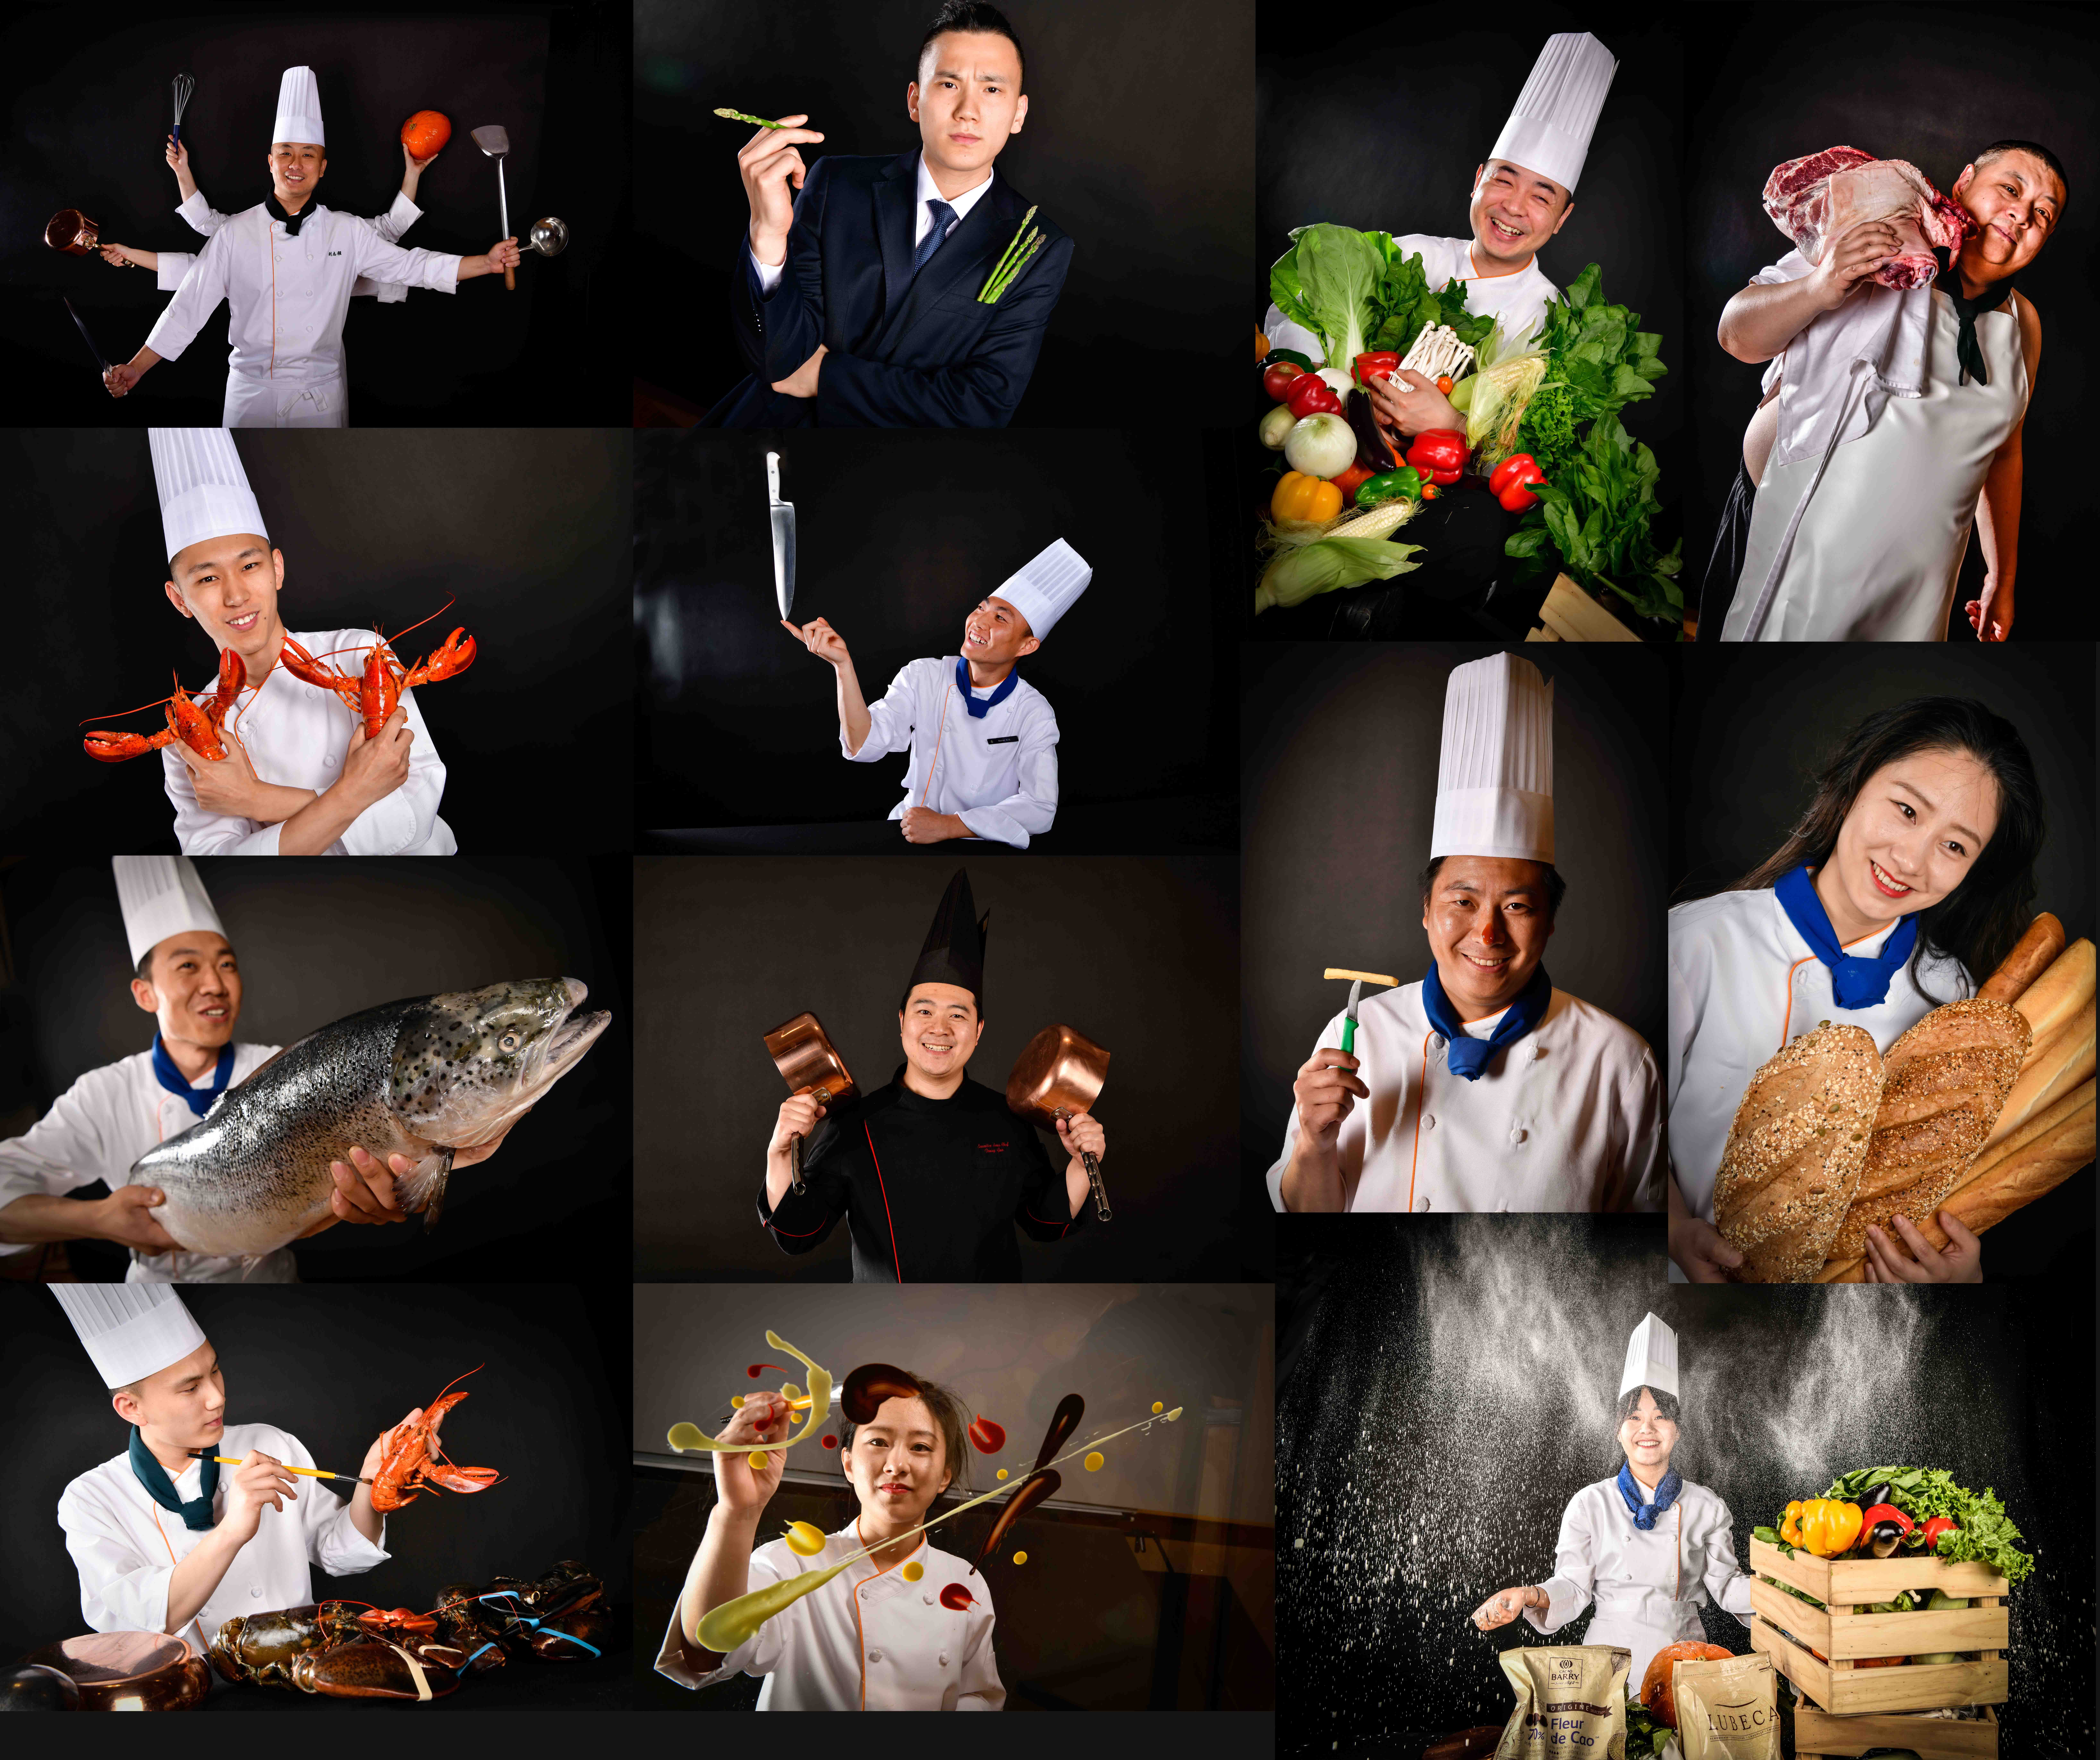 粤秀轩中餐厅厨师团队用满怀热情为您奉上匠心创意的佳肴与餐饮体验!